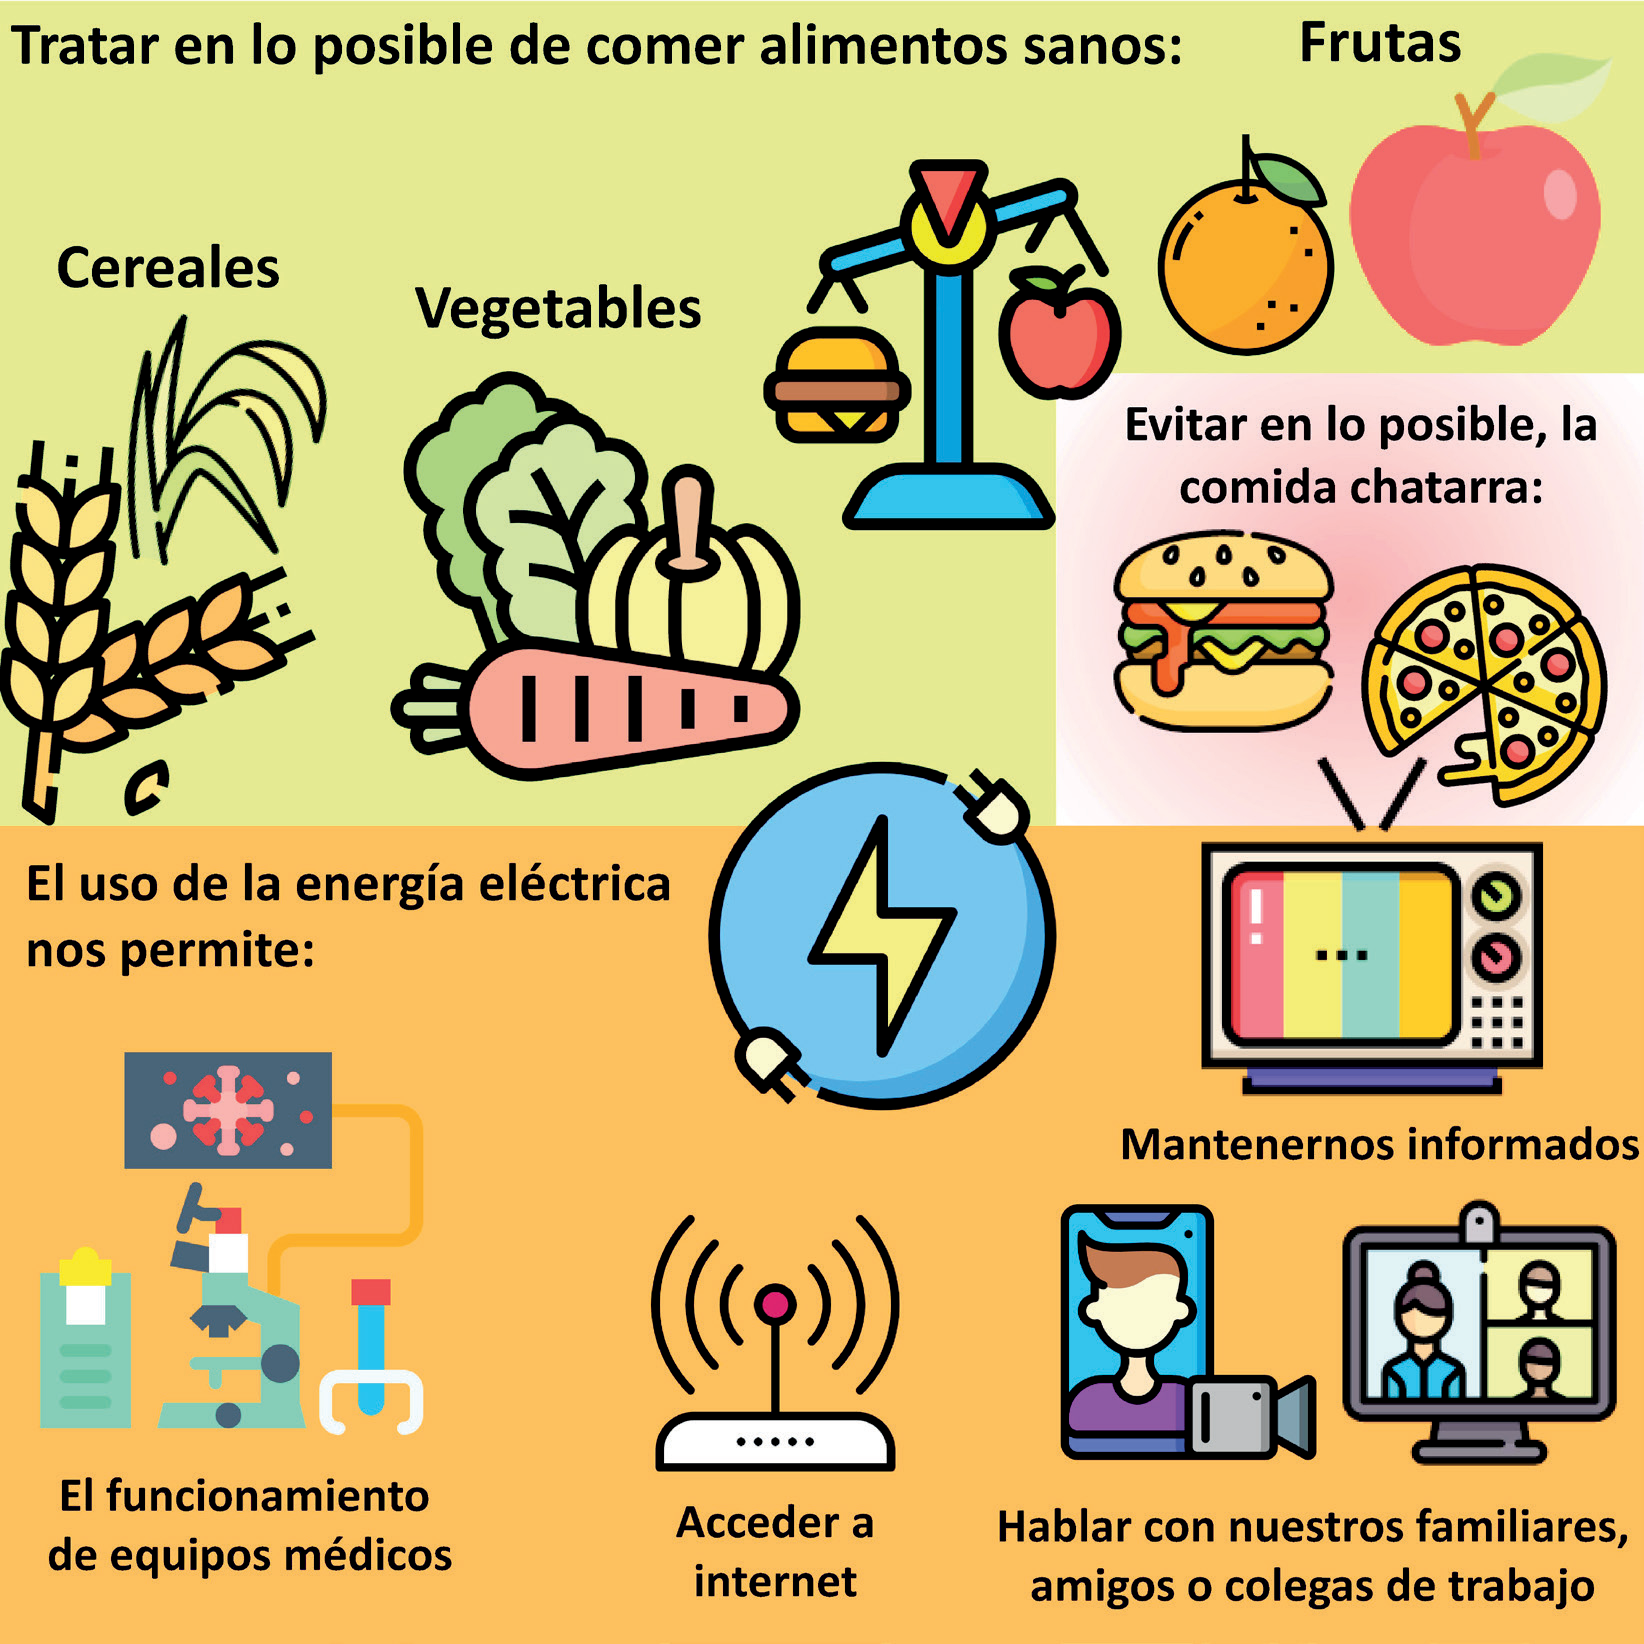 Figura 2: Seguridad alimentaria y Energía.  Imágenes tomadas de https://www.flaticon.com/